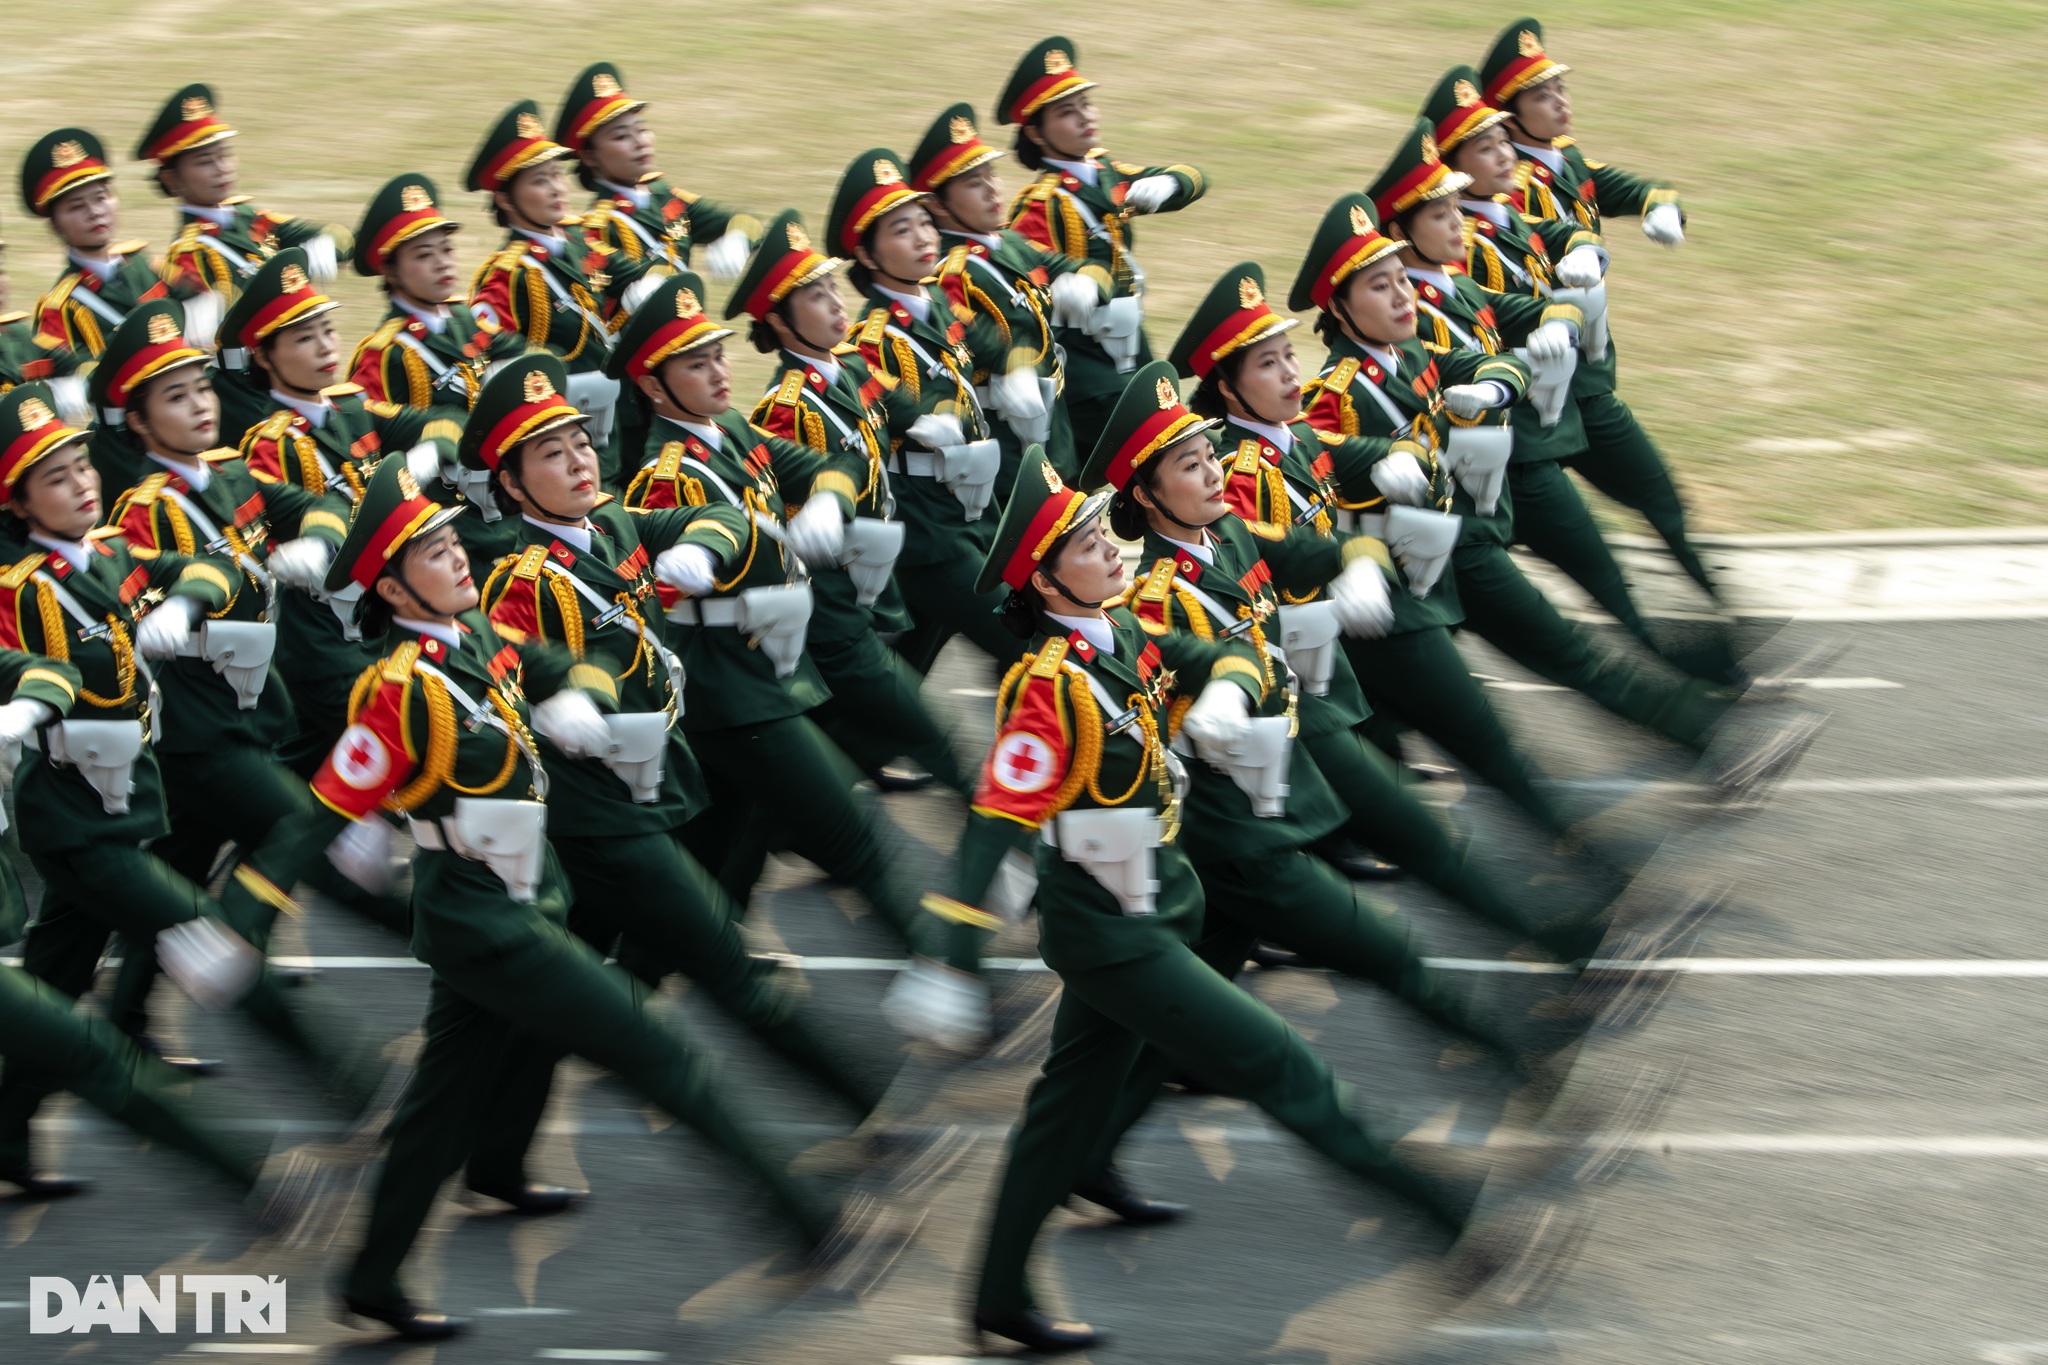 Ngắm những bông hồng thép trong lễ Tổng duyệt diễu binh ở Điện Biên - 4